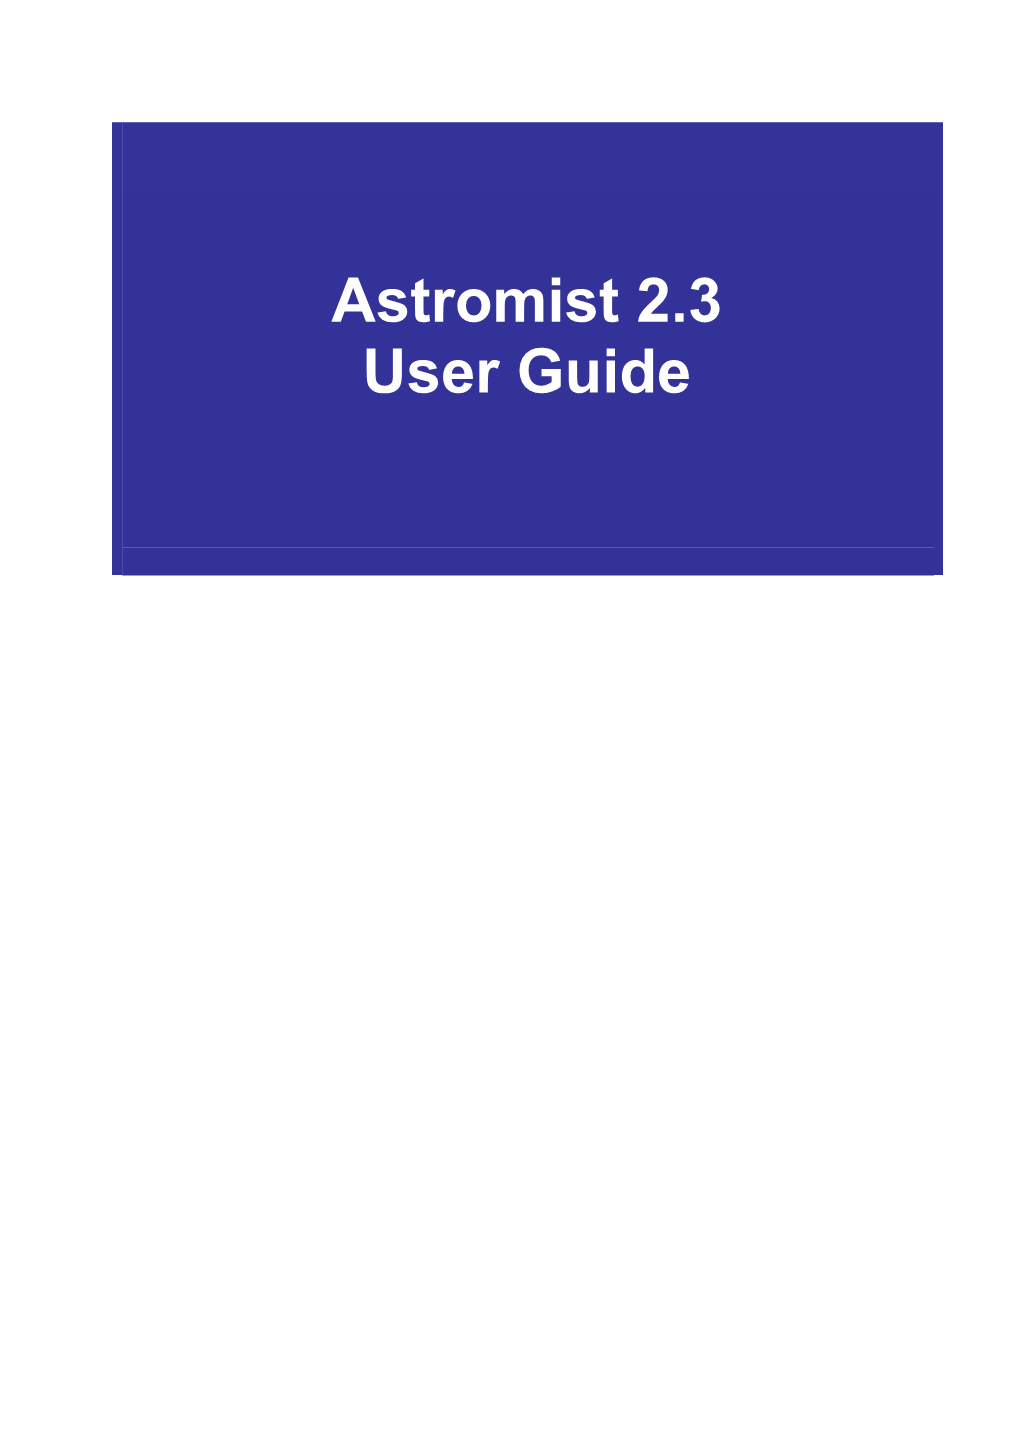 Astromist 2.3 User Guide